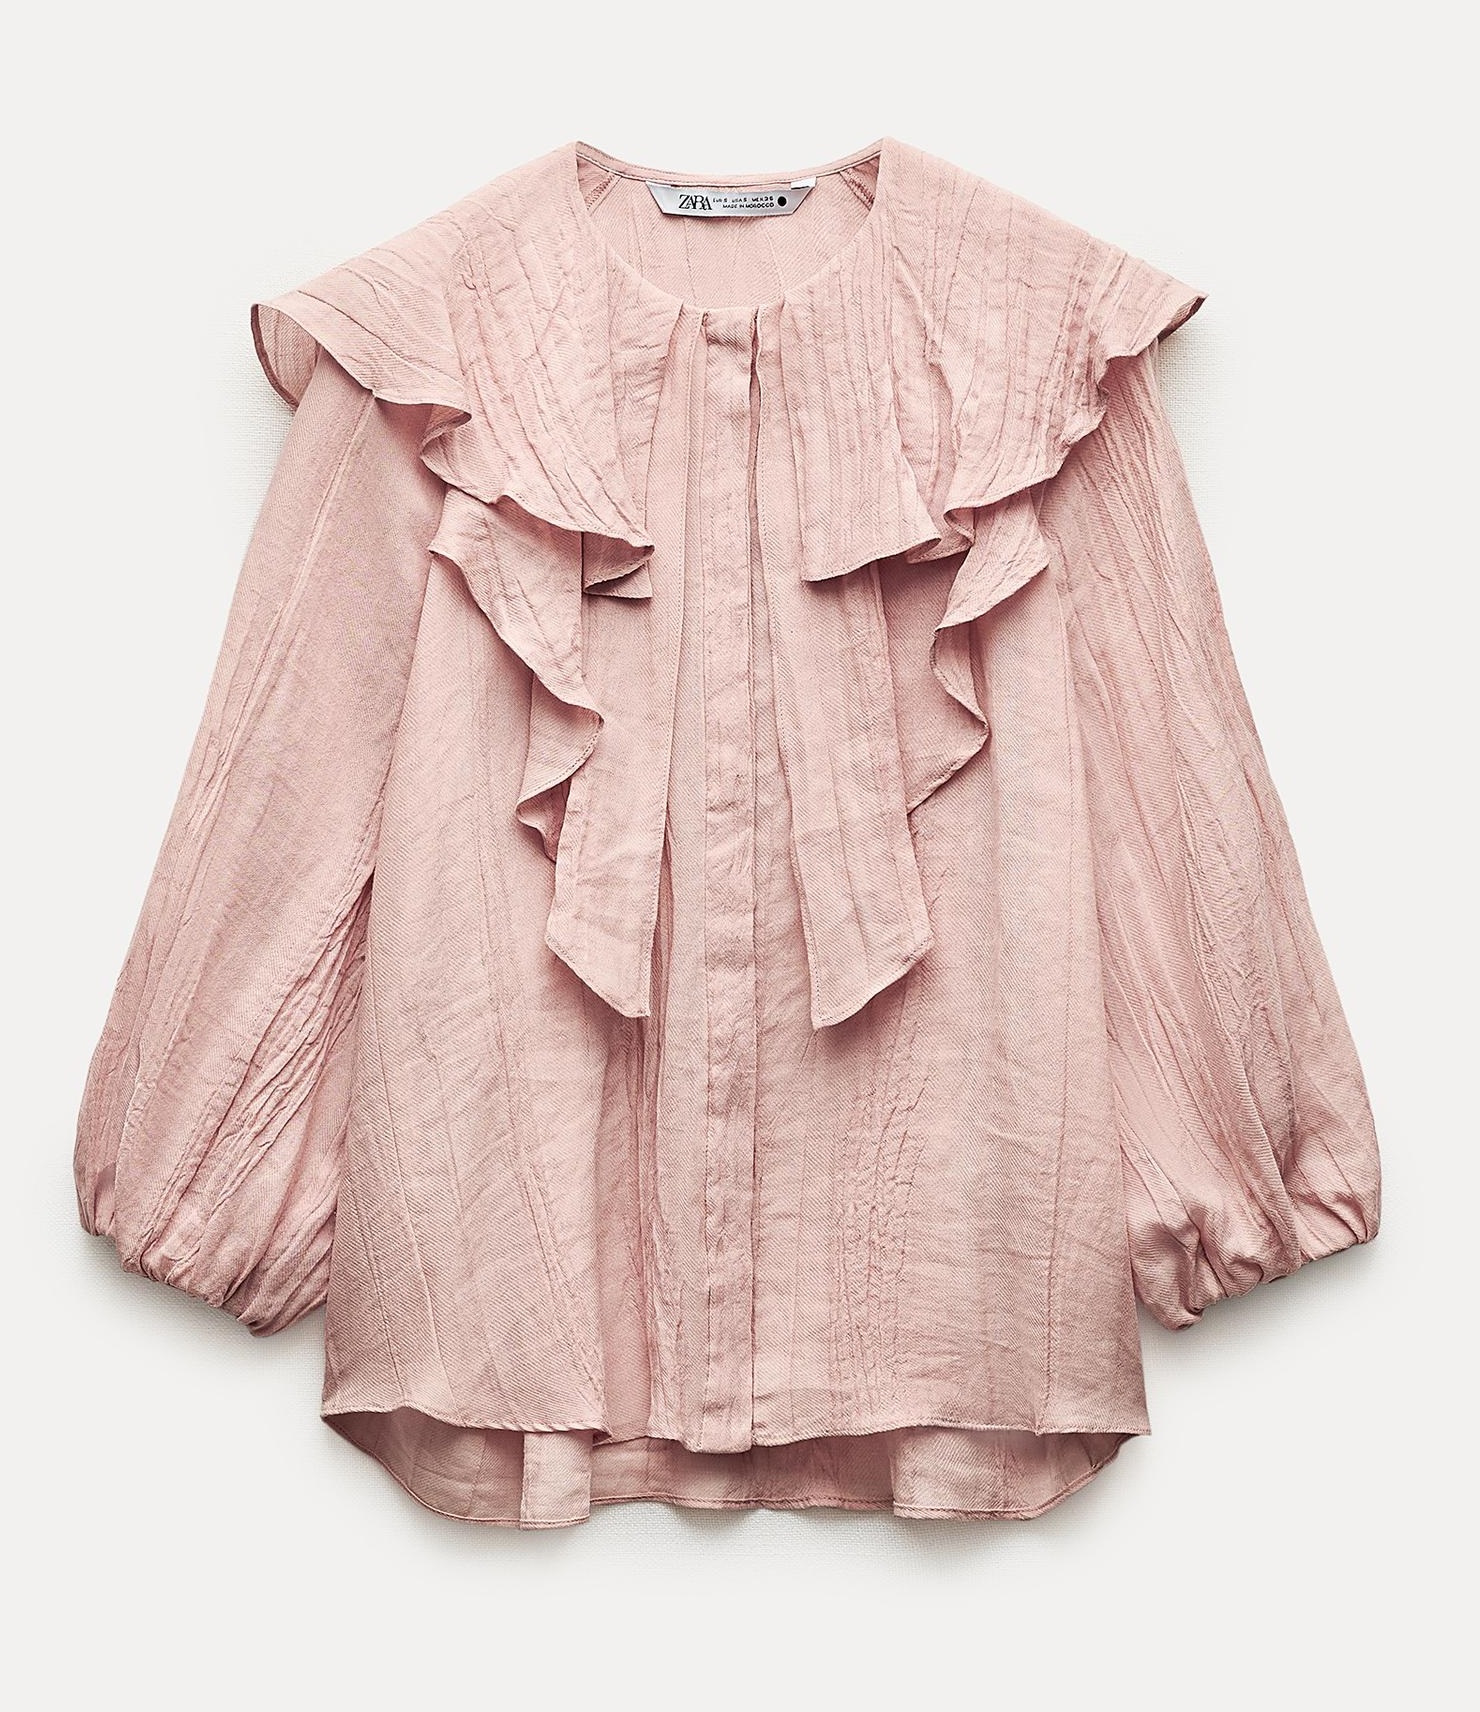 Рубашка Zara Zw Collection With Ruffled Collar, светло-розовый рубашка zara zw collection 100% ruffled ramie белый